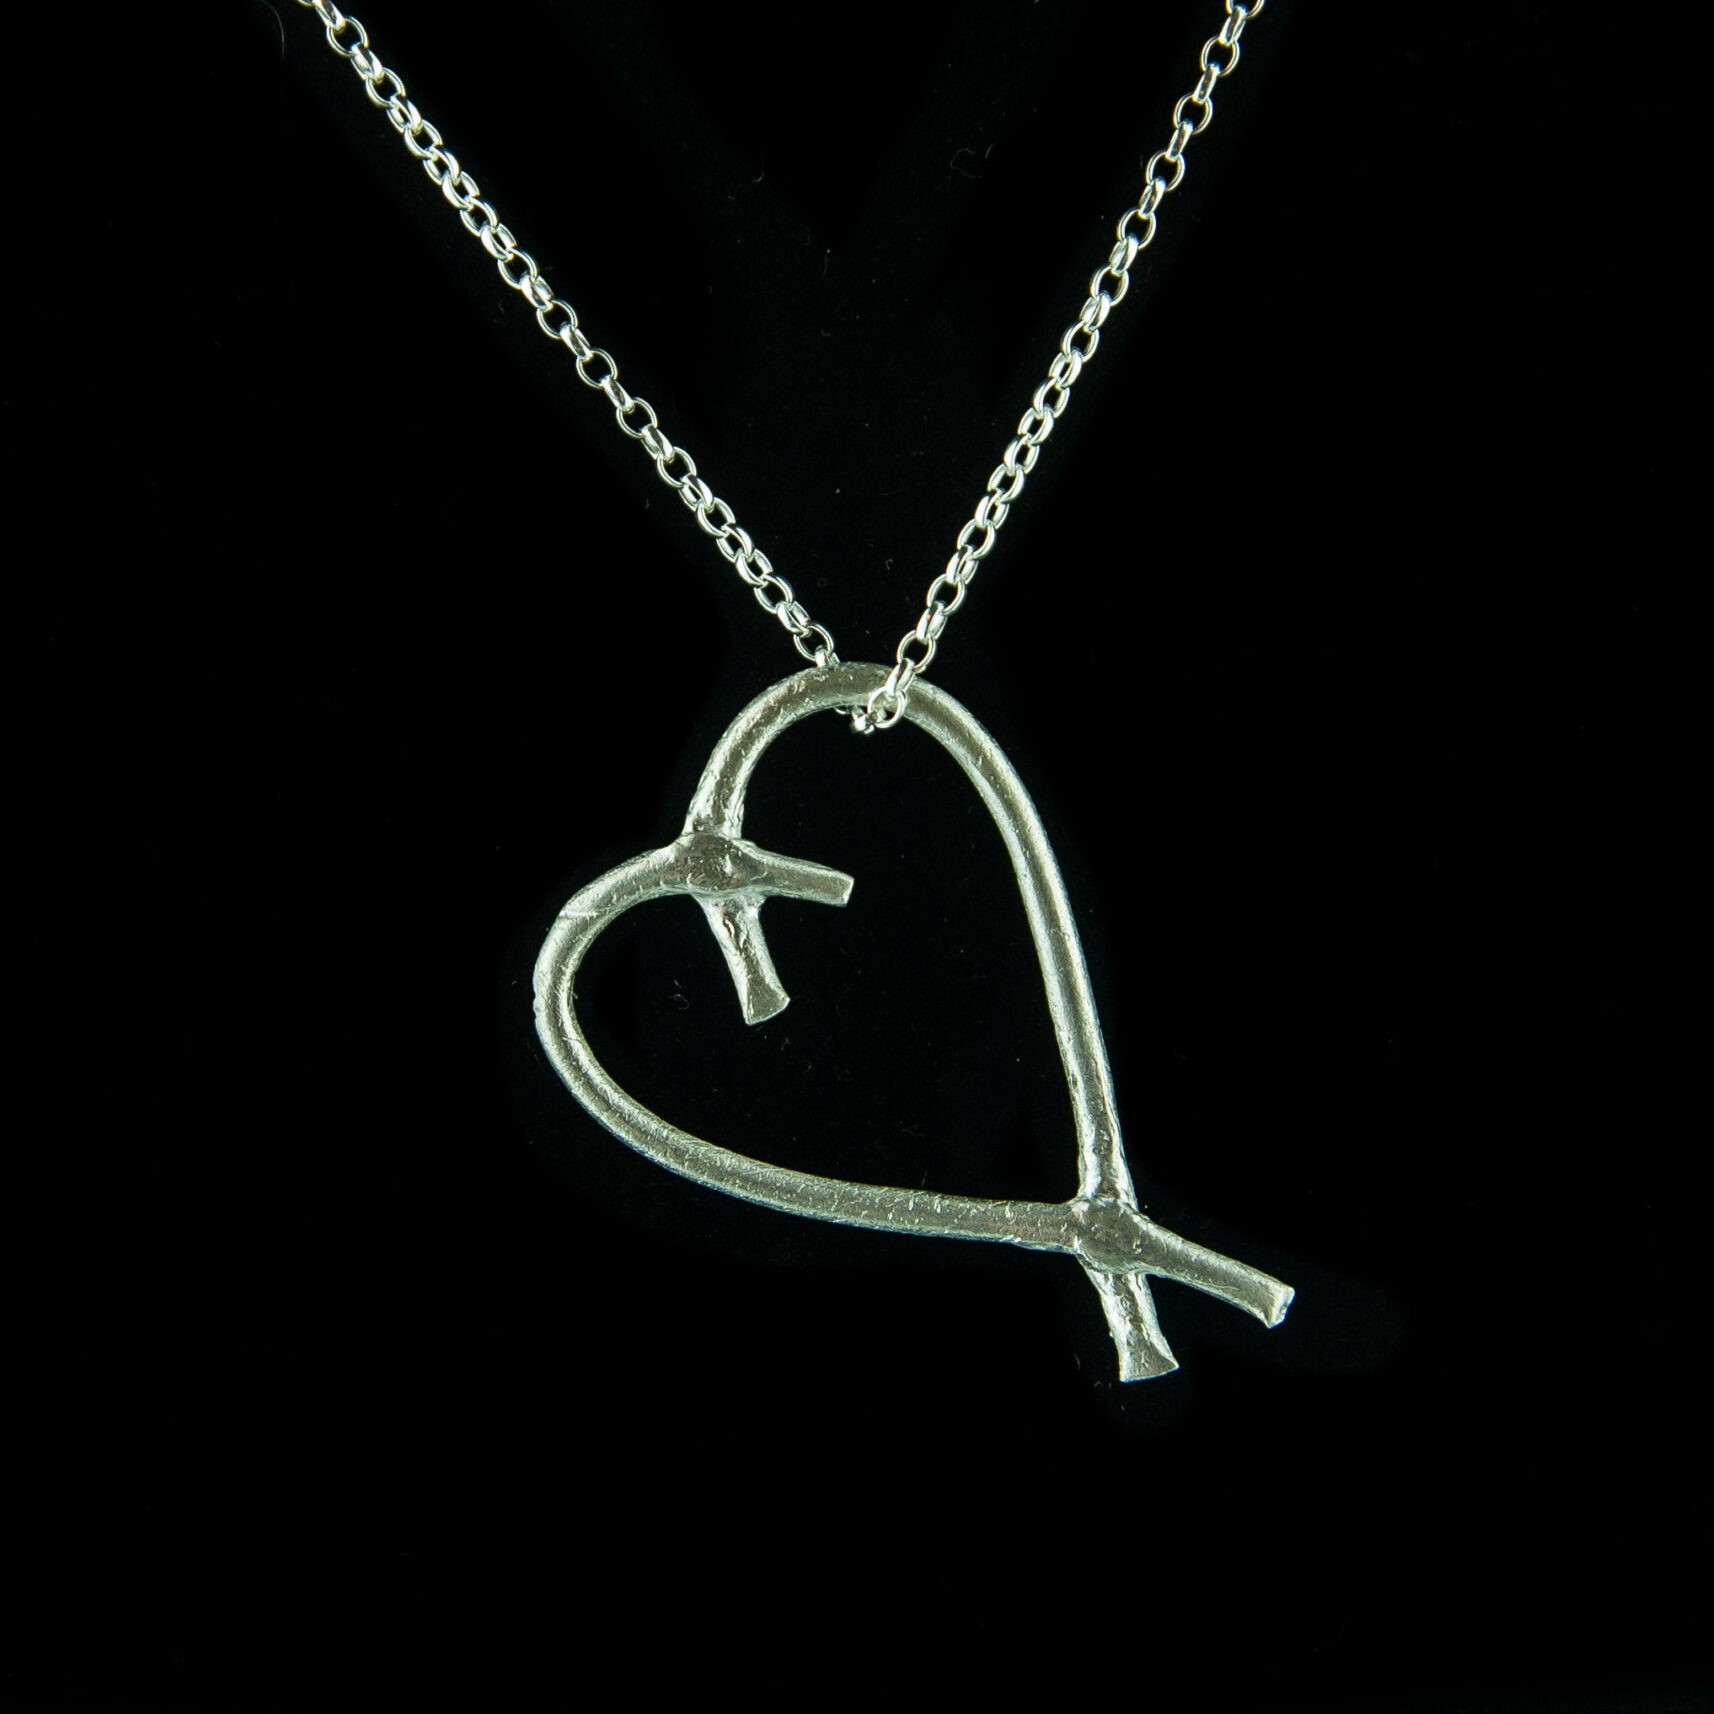 Contemporary silver heart pendant